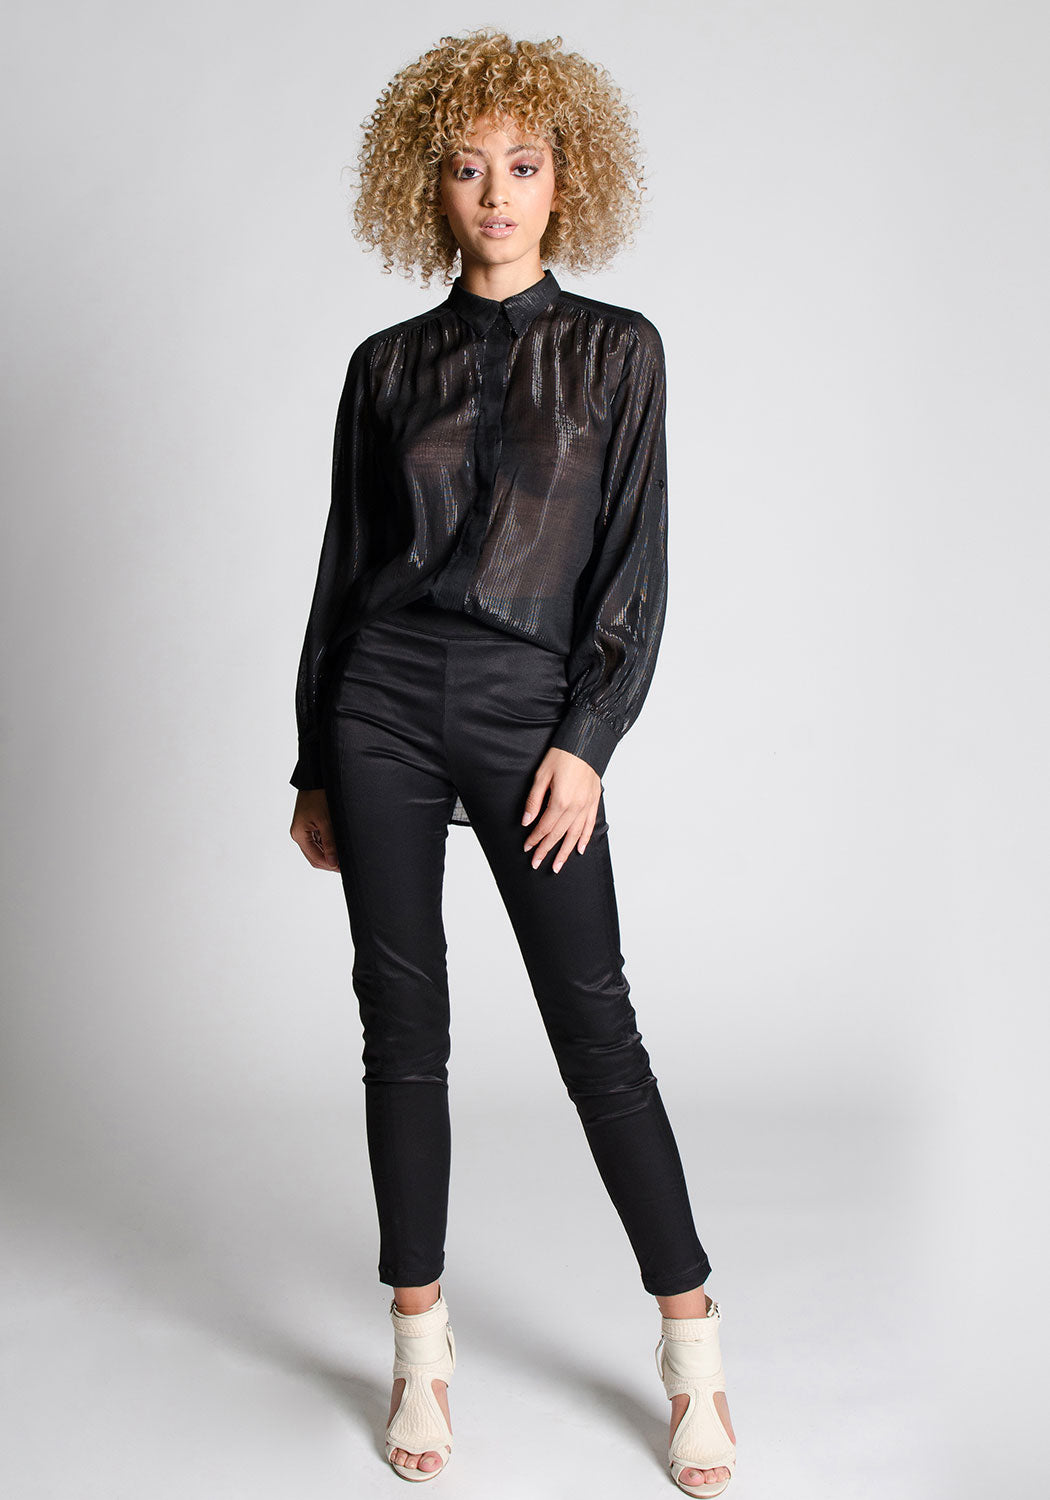 Zara - Zara Black Cigarette Pants on Designer Wardrobe